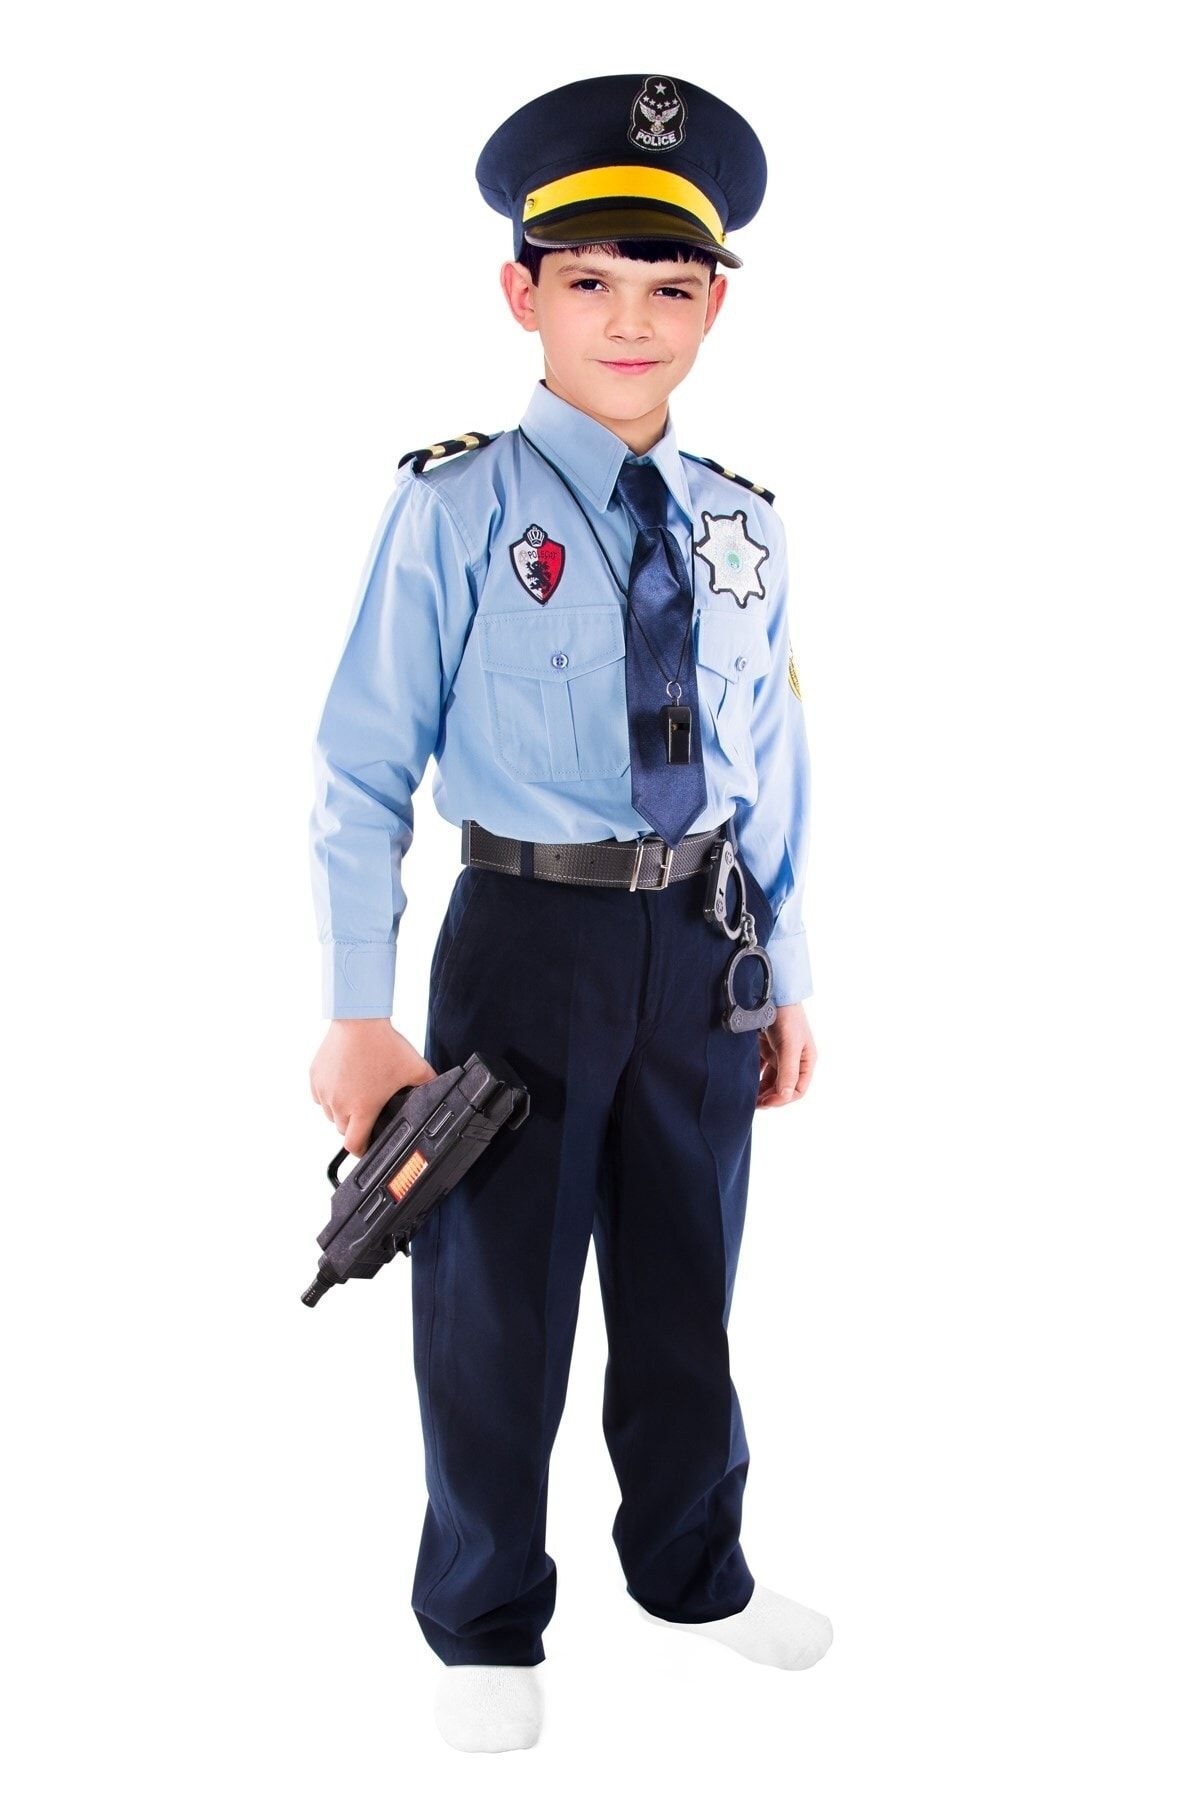 OULABİMİR Polis Kostümü Çocuk Kıyafeti